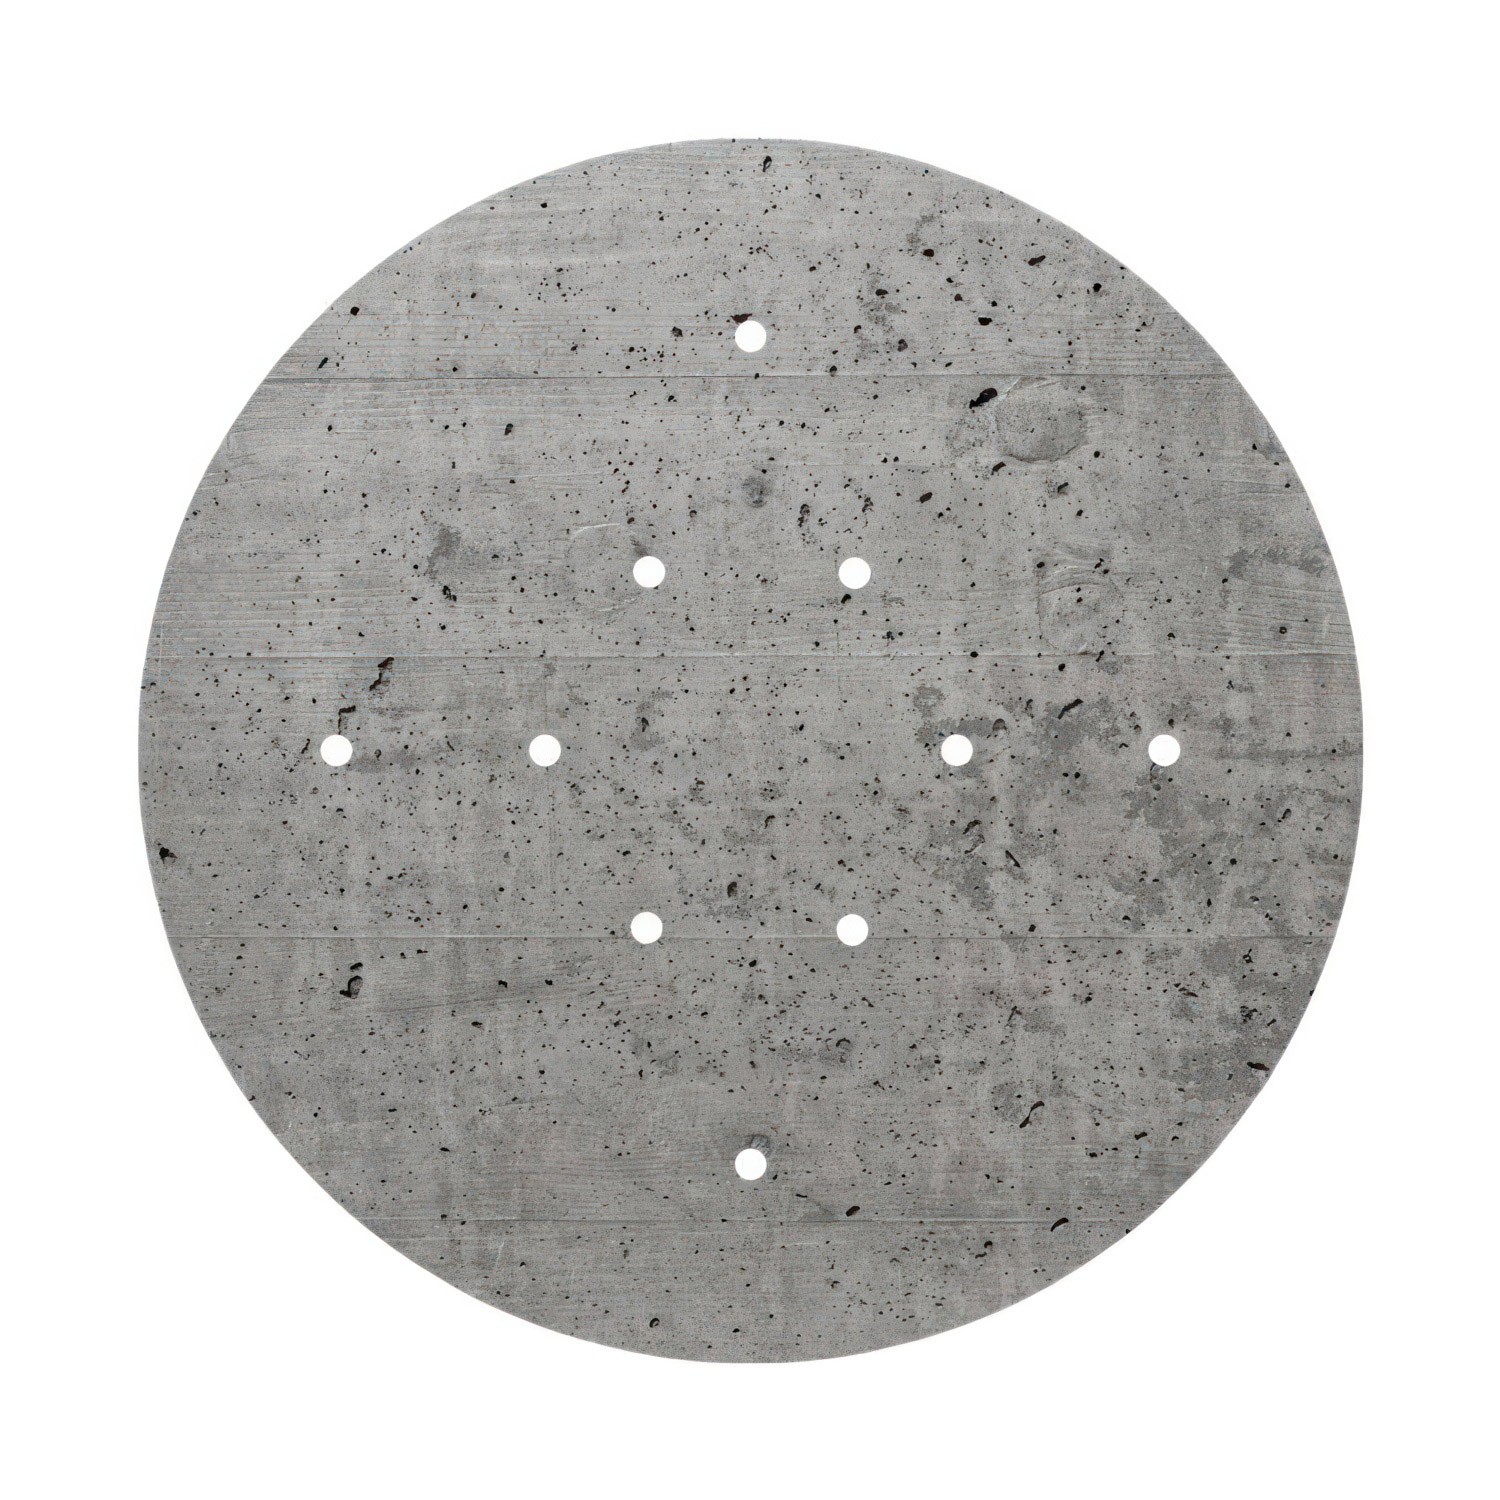 Rundes XXL 10-Loch und 4 Seitenlöchern Lampenbaldachin, Rose-One-Abdeckung, 400 mm Durchmesser